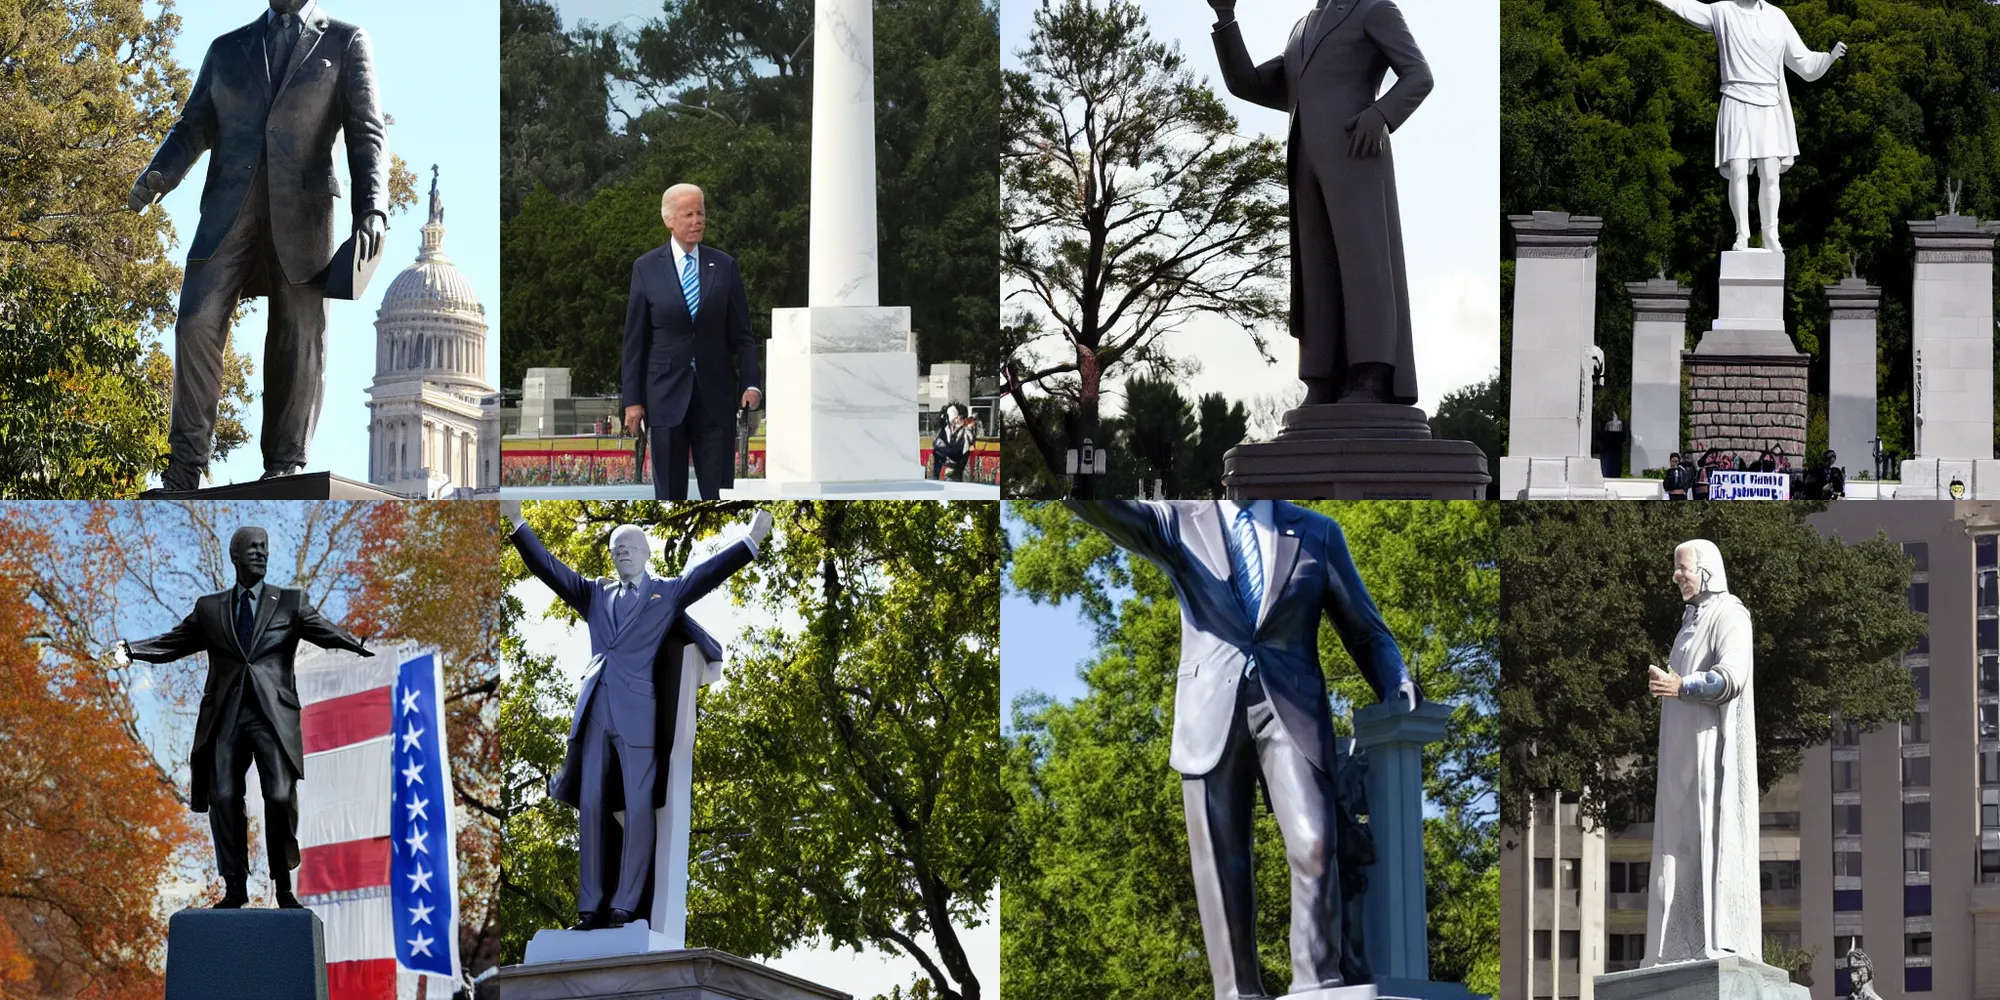 Prompt: Joe Biden the redeemer statue